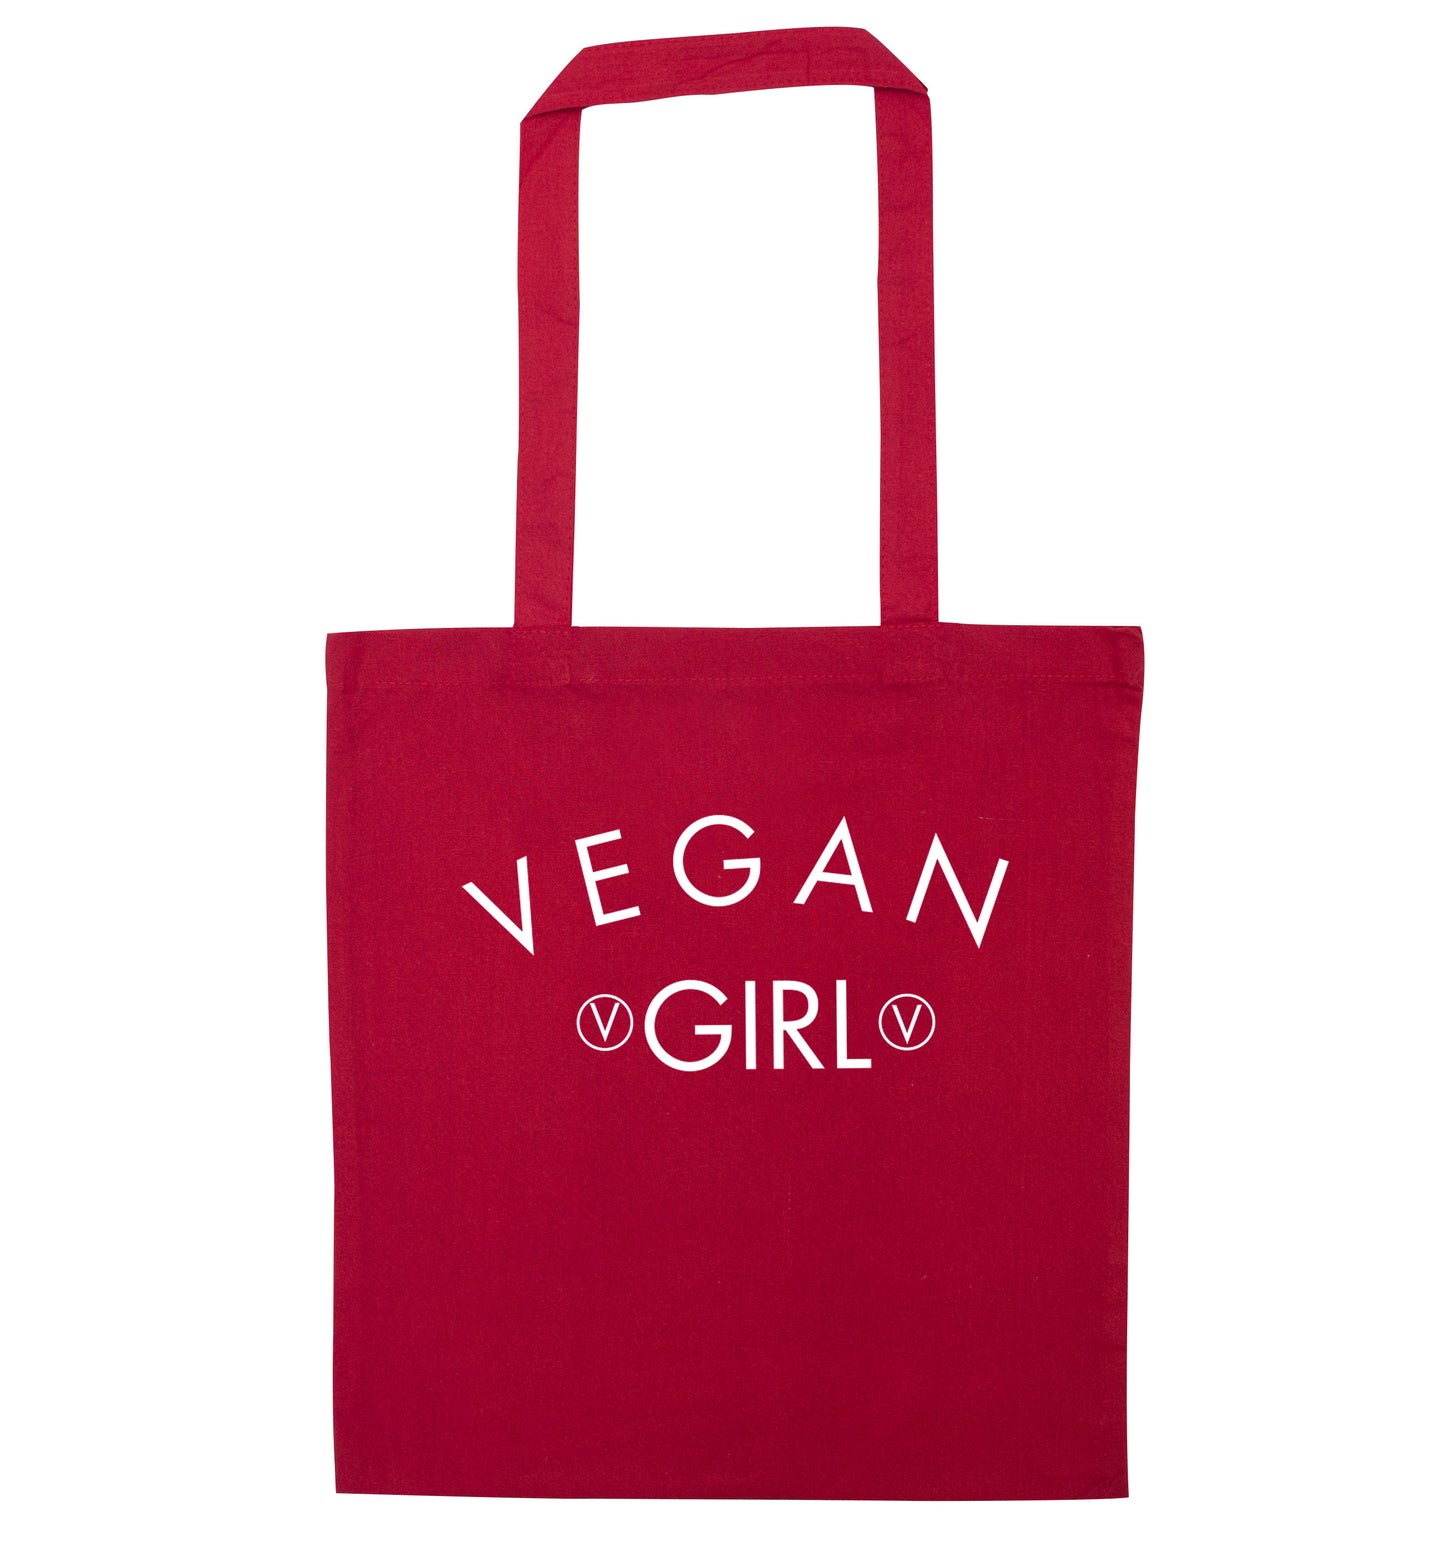 Vegan girl red tote bag